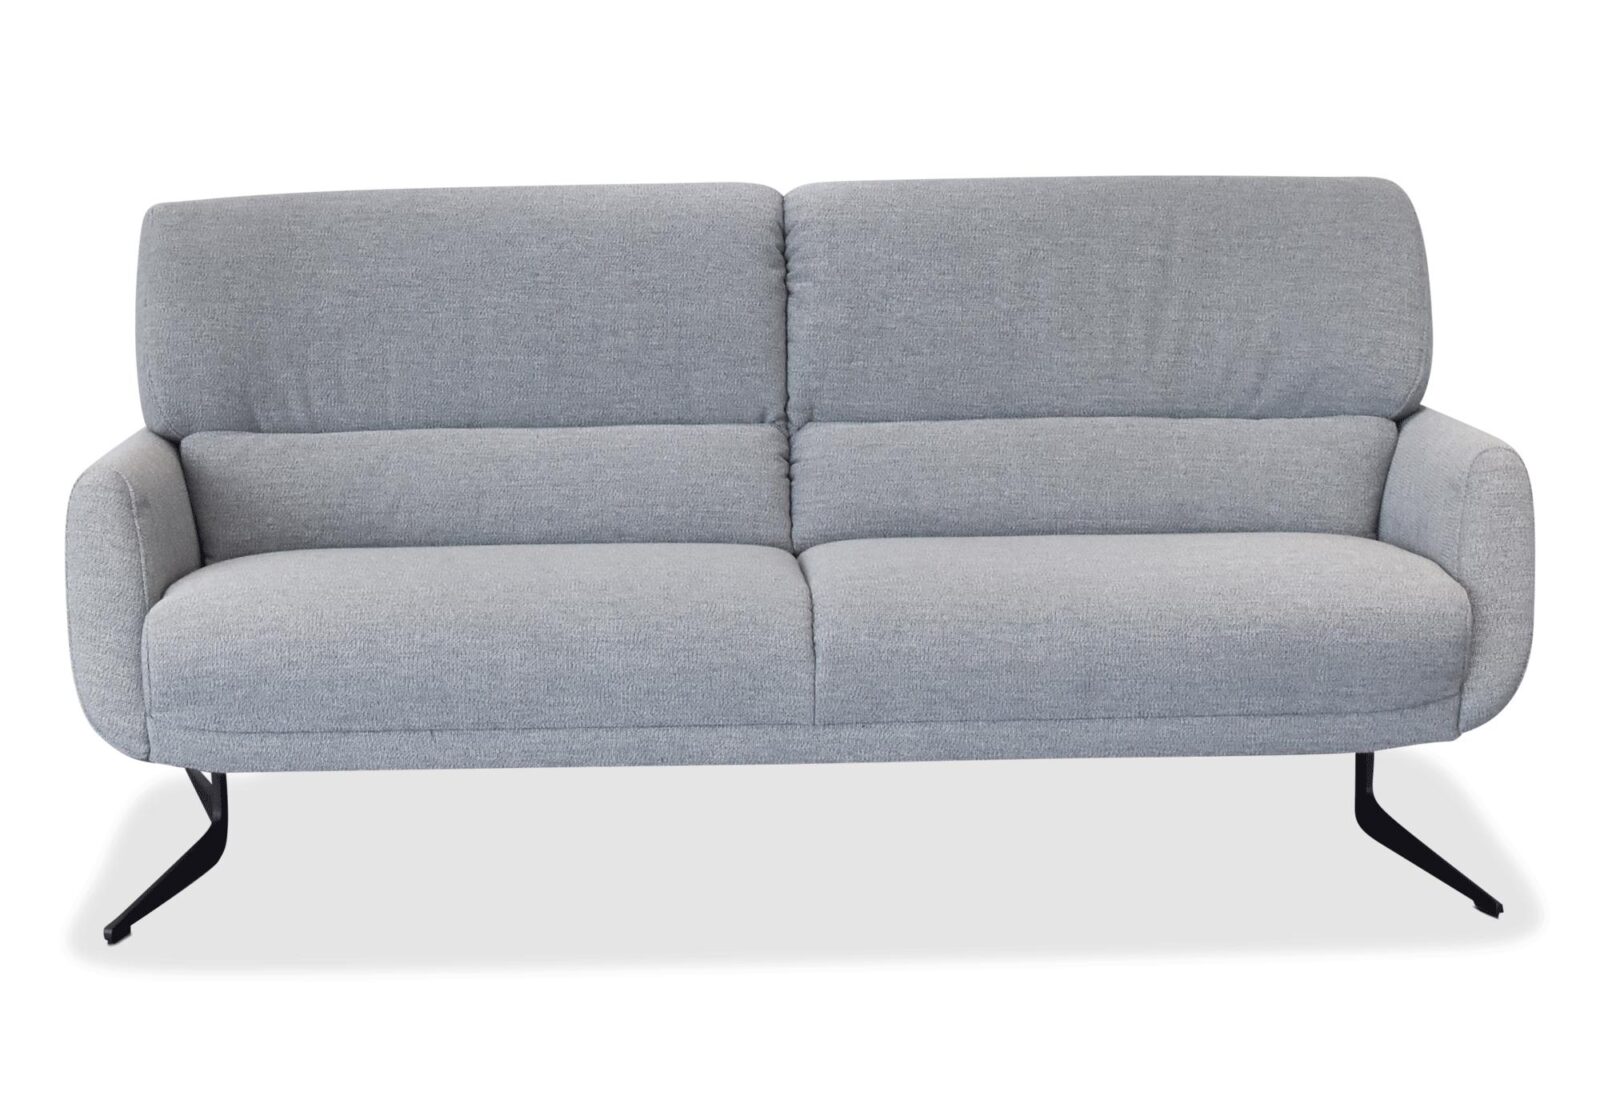 3er Sofa Dacia  preiswert und modern. Bezug: Stoff. Farbe: Graublau. Erhältlich bei Möbel Gallati.